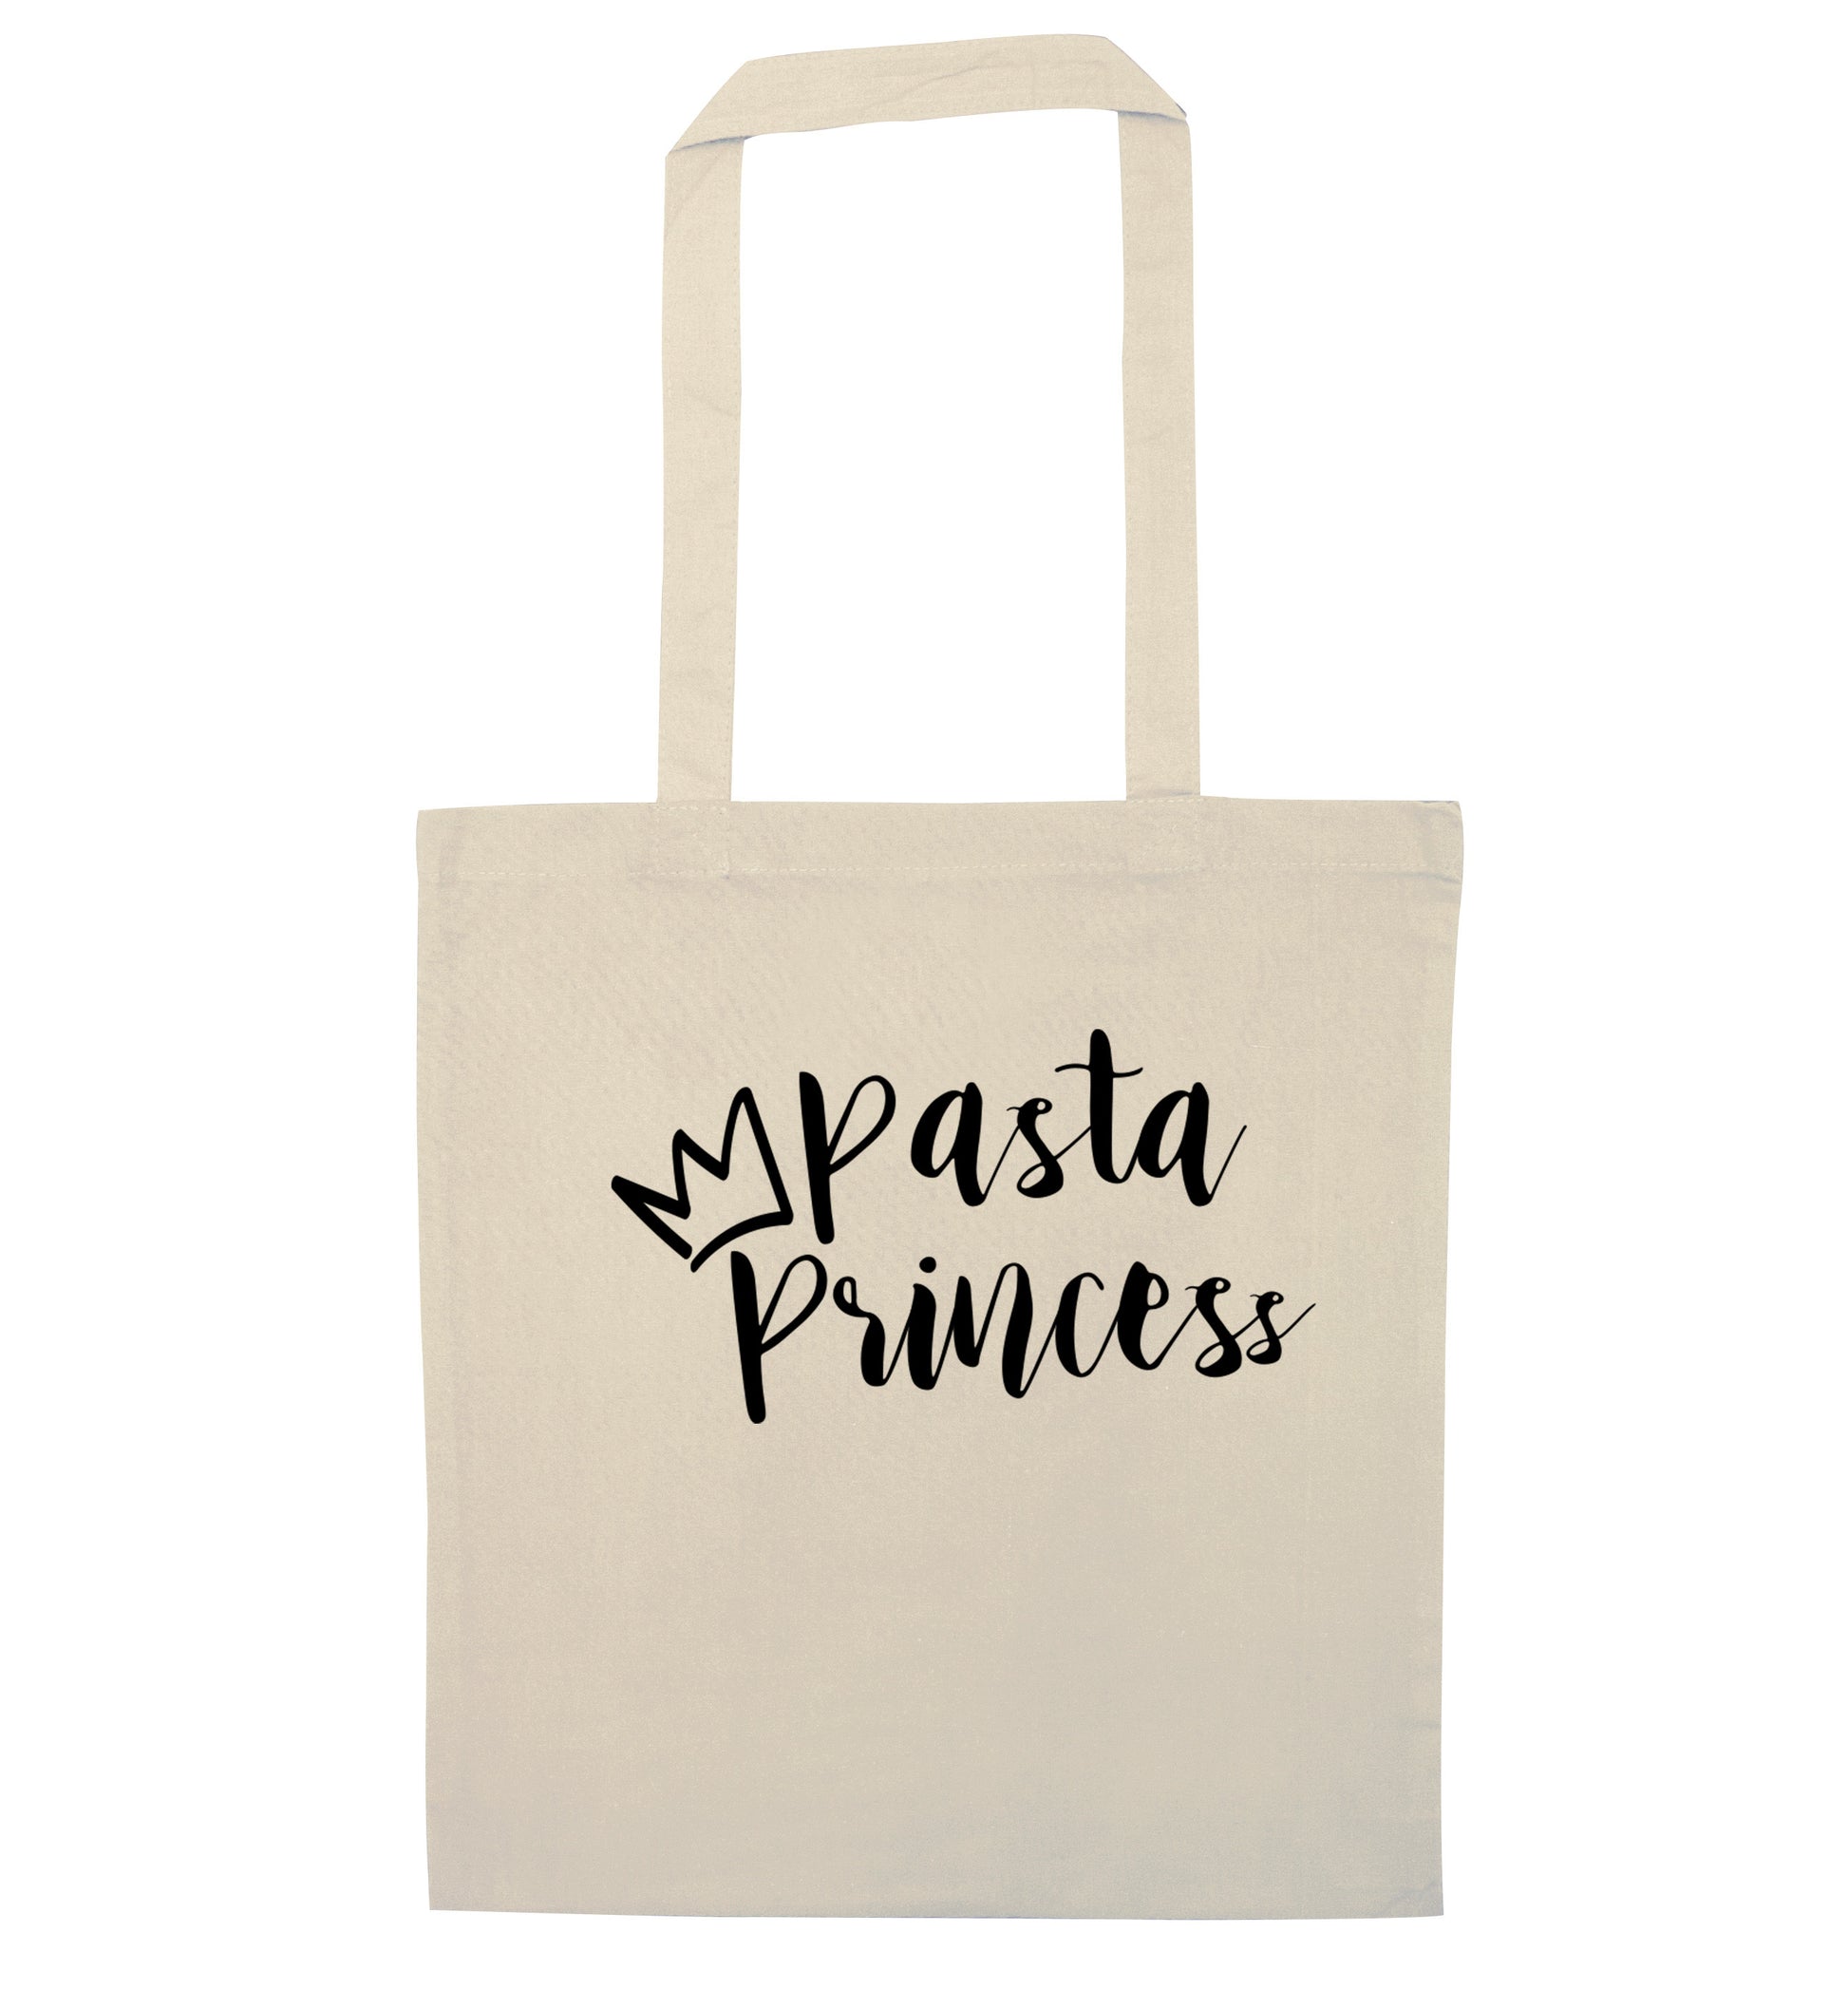 Pasta Princess natural tote bag